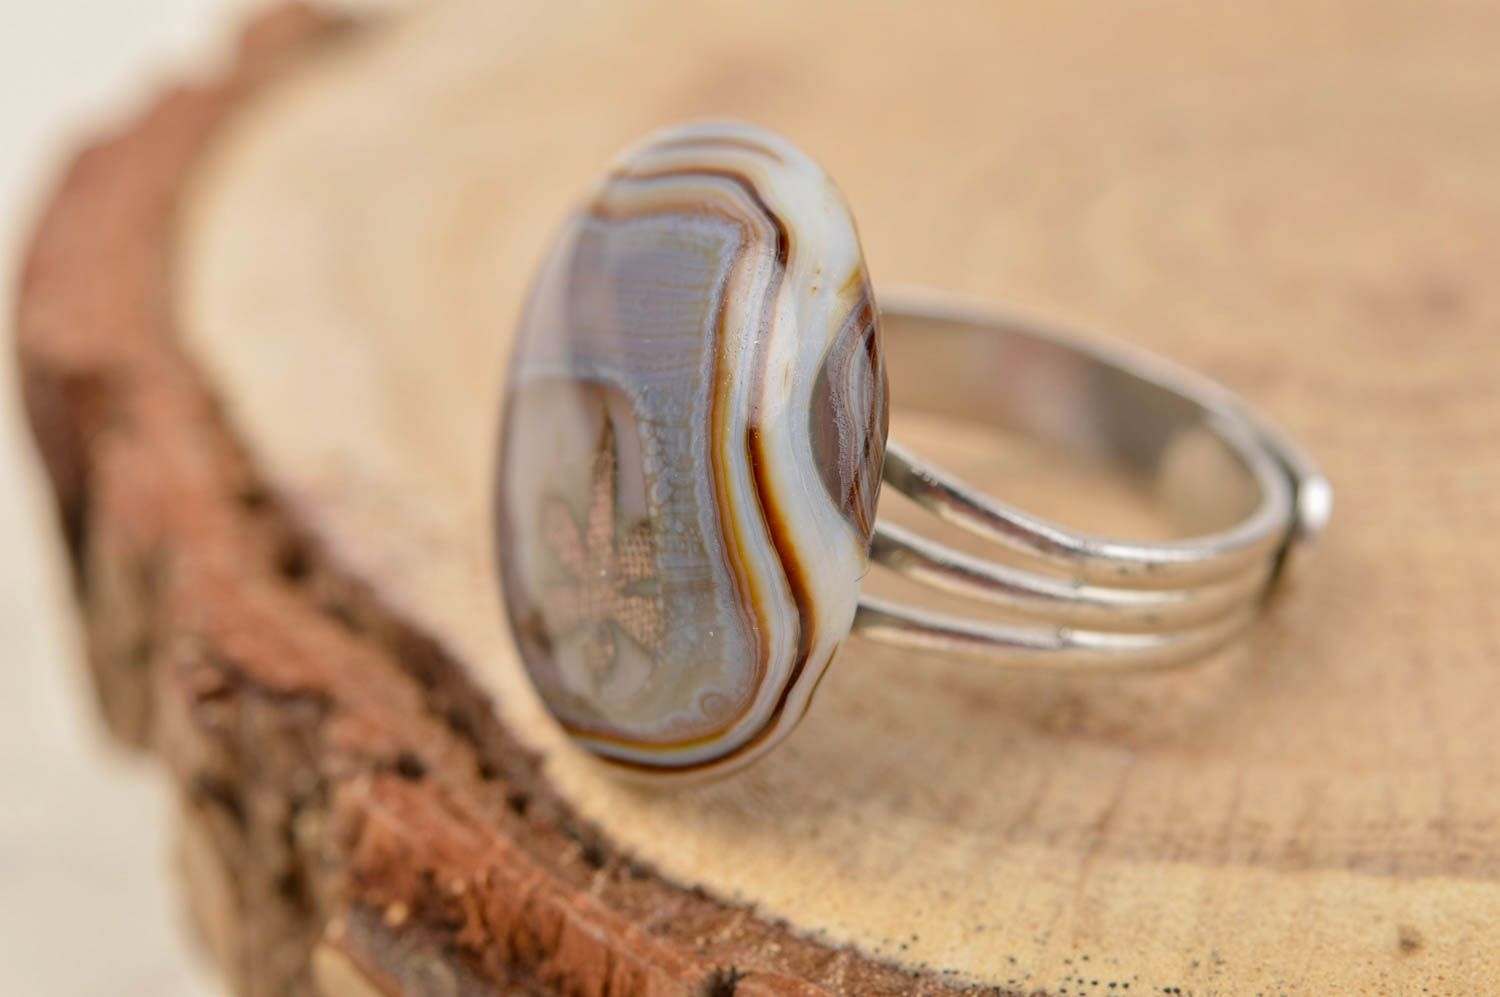 Кольцо ручной работы бижутерия из стекла авторское украшение кольцо из стекла  фото 1